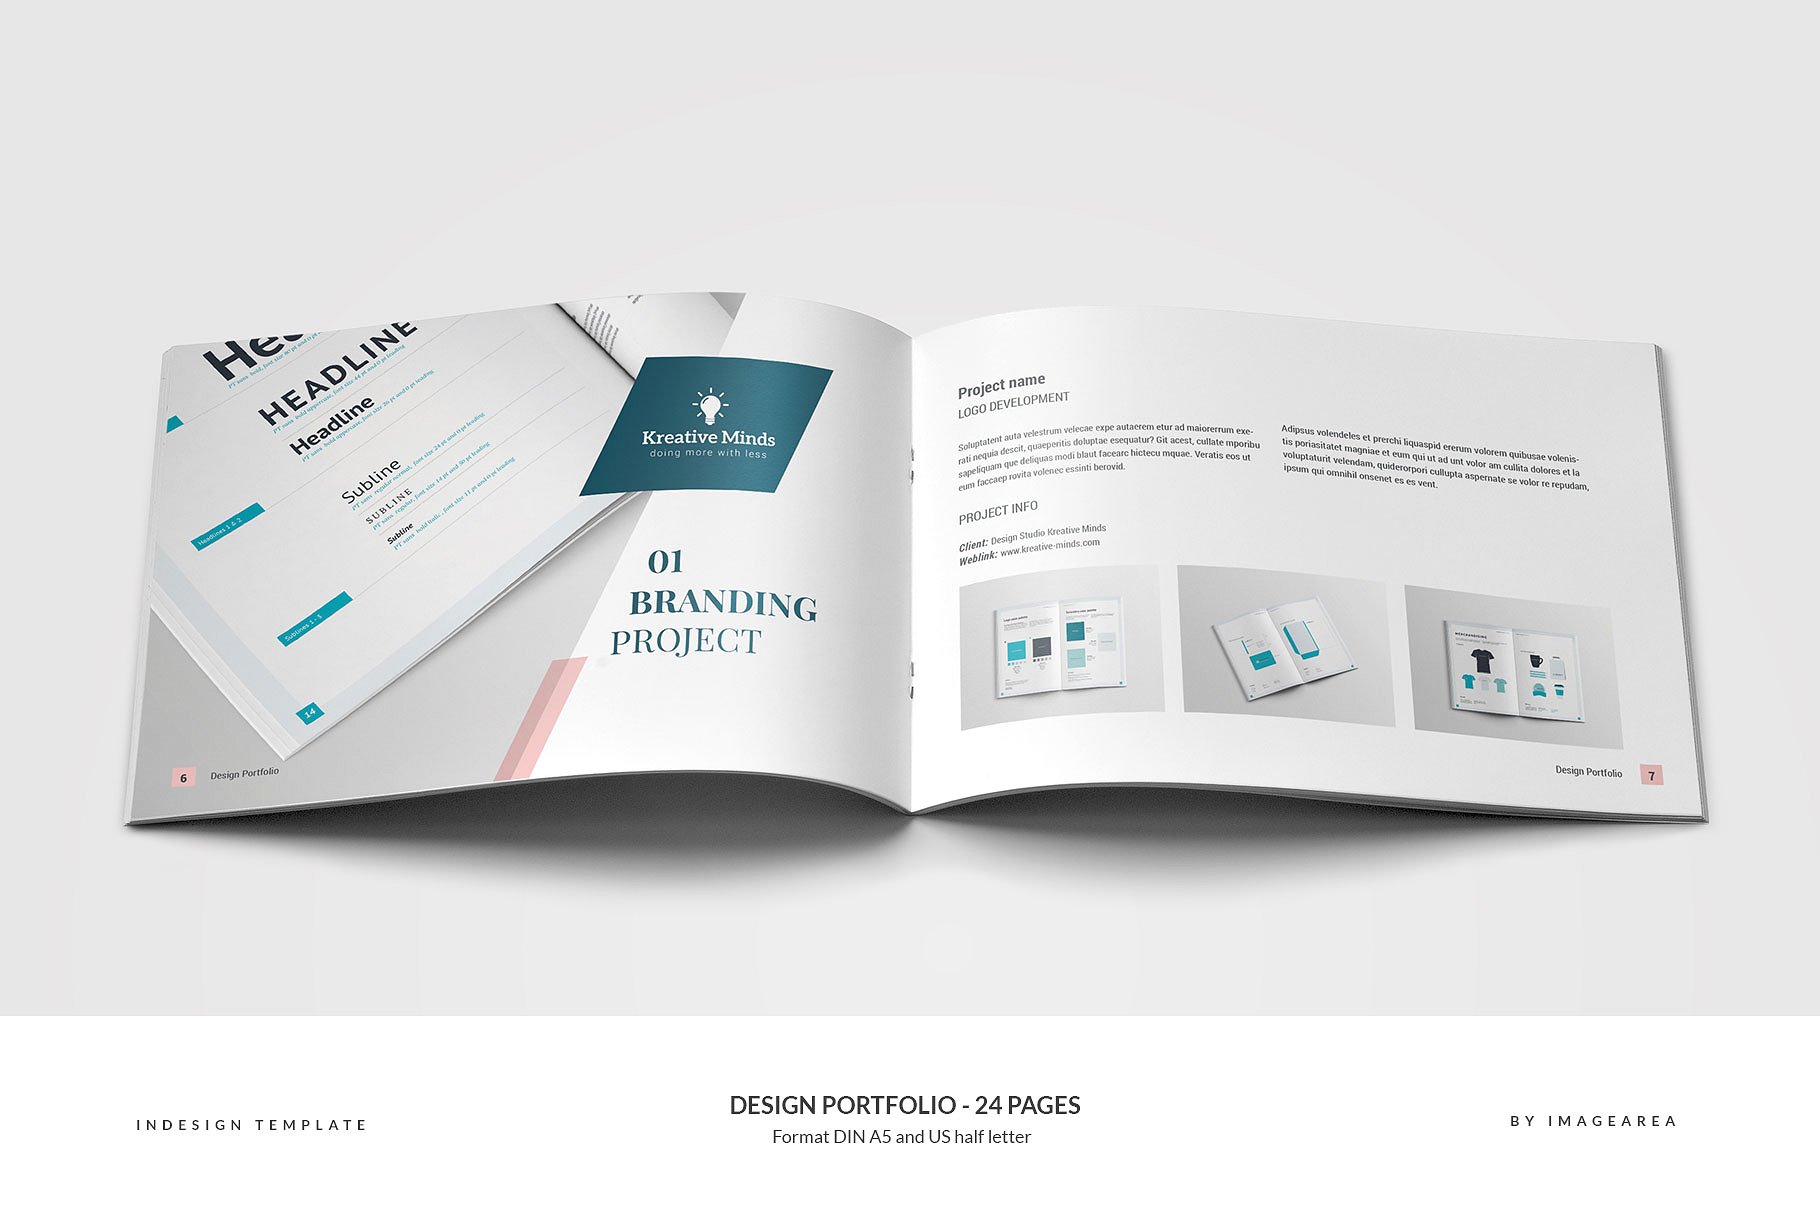 时尚简约企业画册模板 Design Portfolio – 24 Pages插图(3)